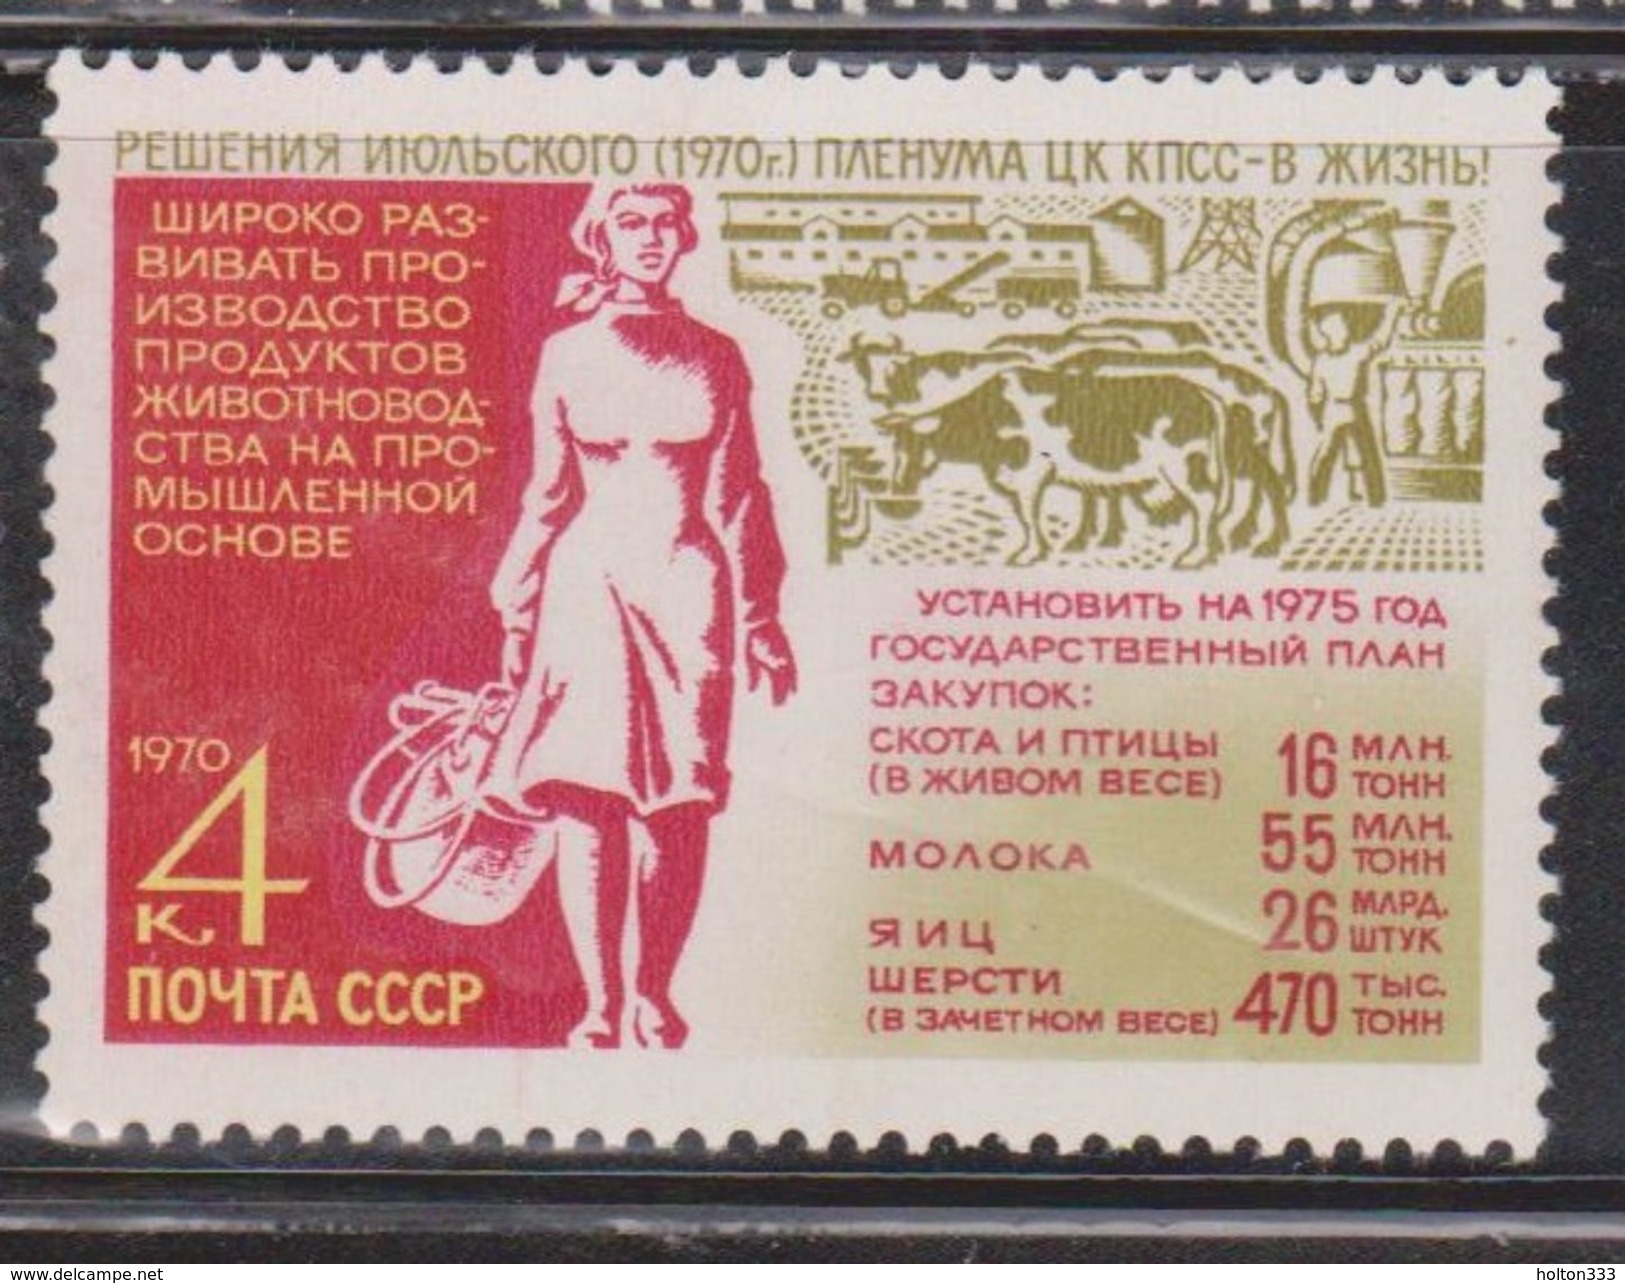 RUSSIA Scott # 3774 Mint Hinged - Farm Woman & Cattle Farm - Express Mail